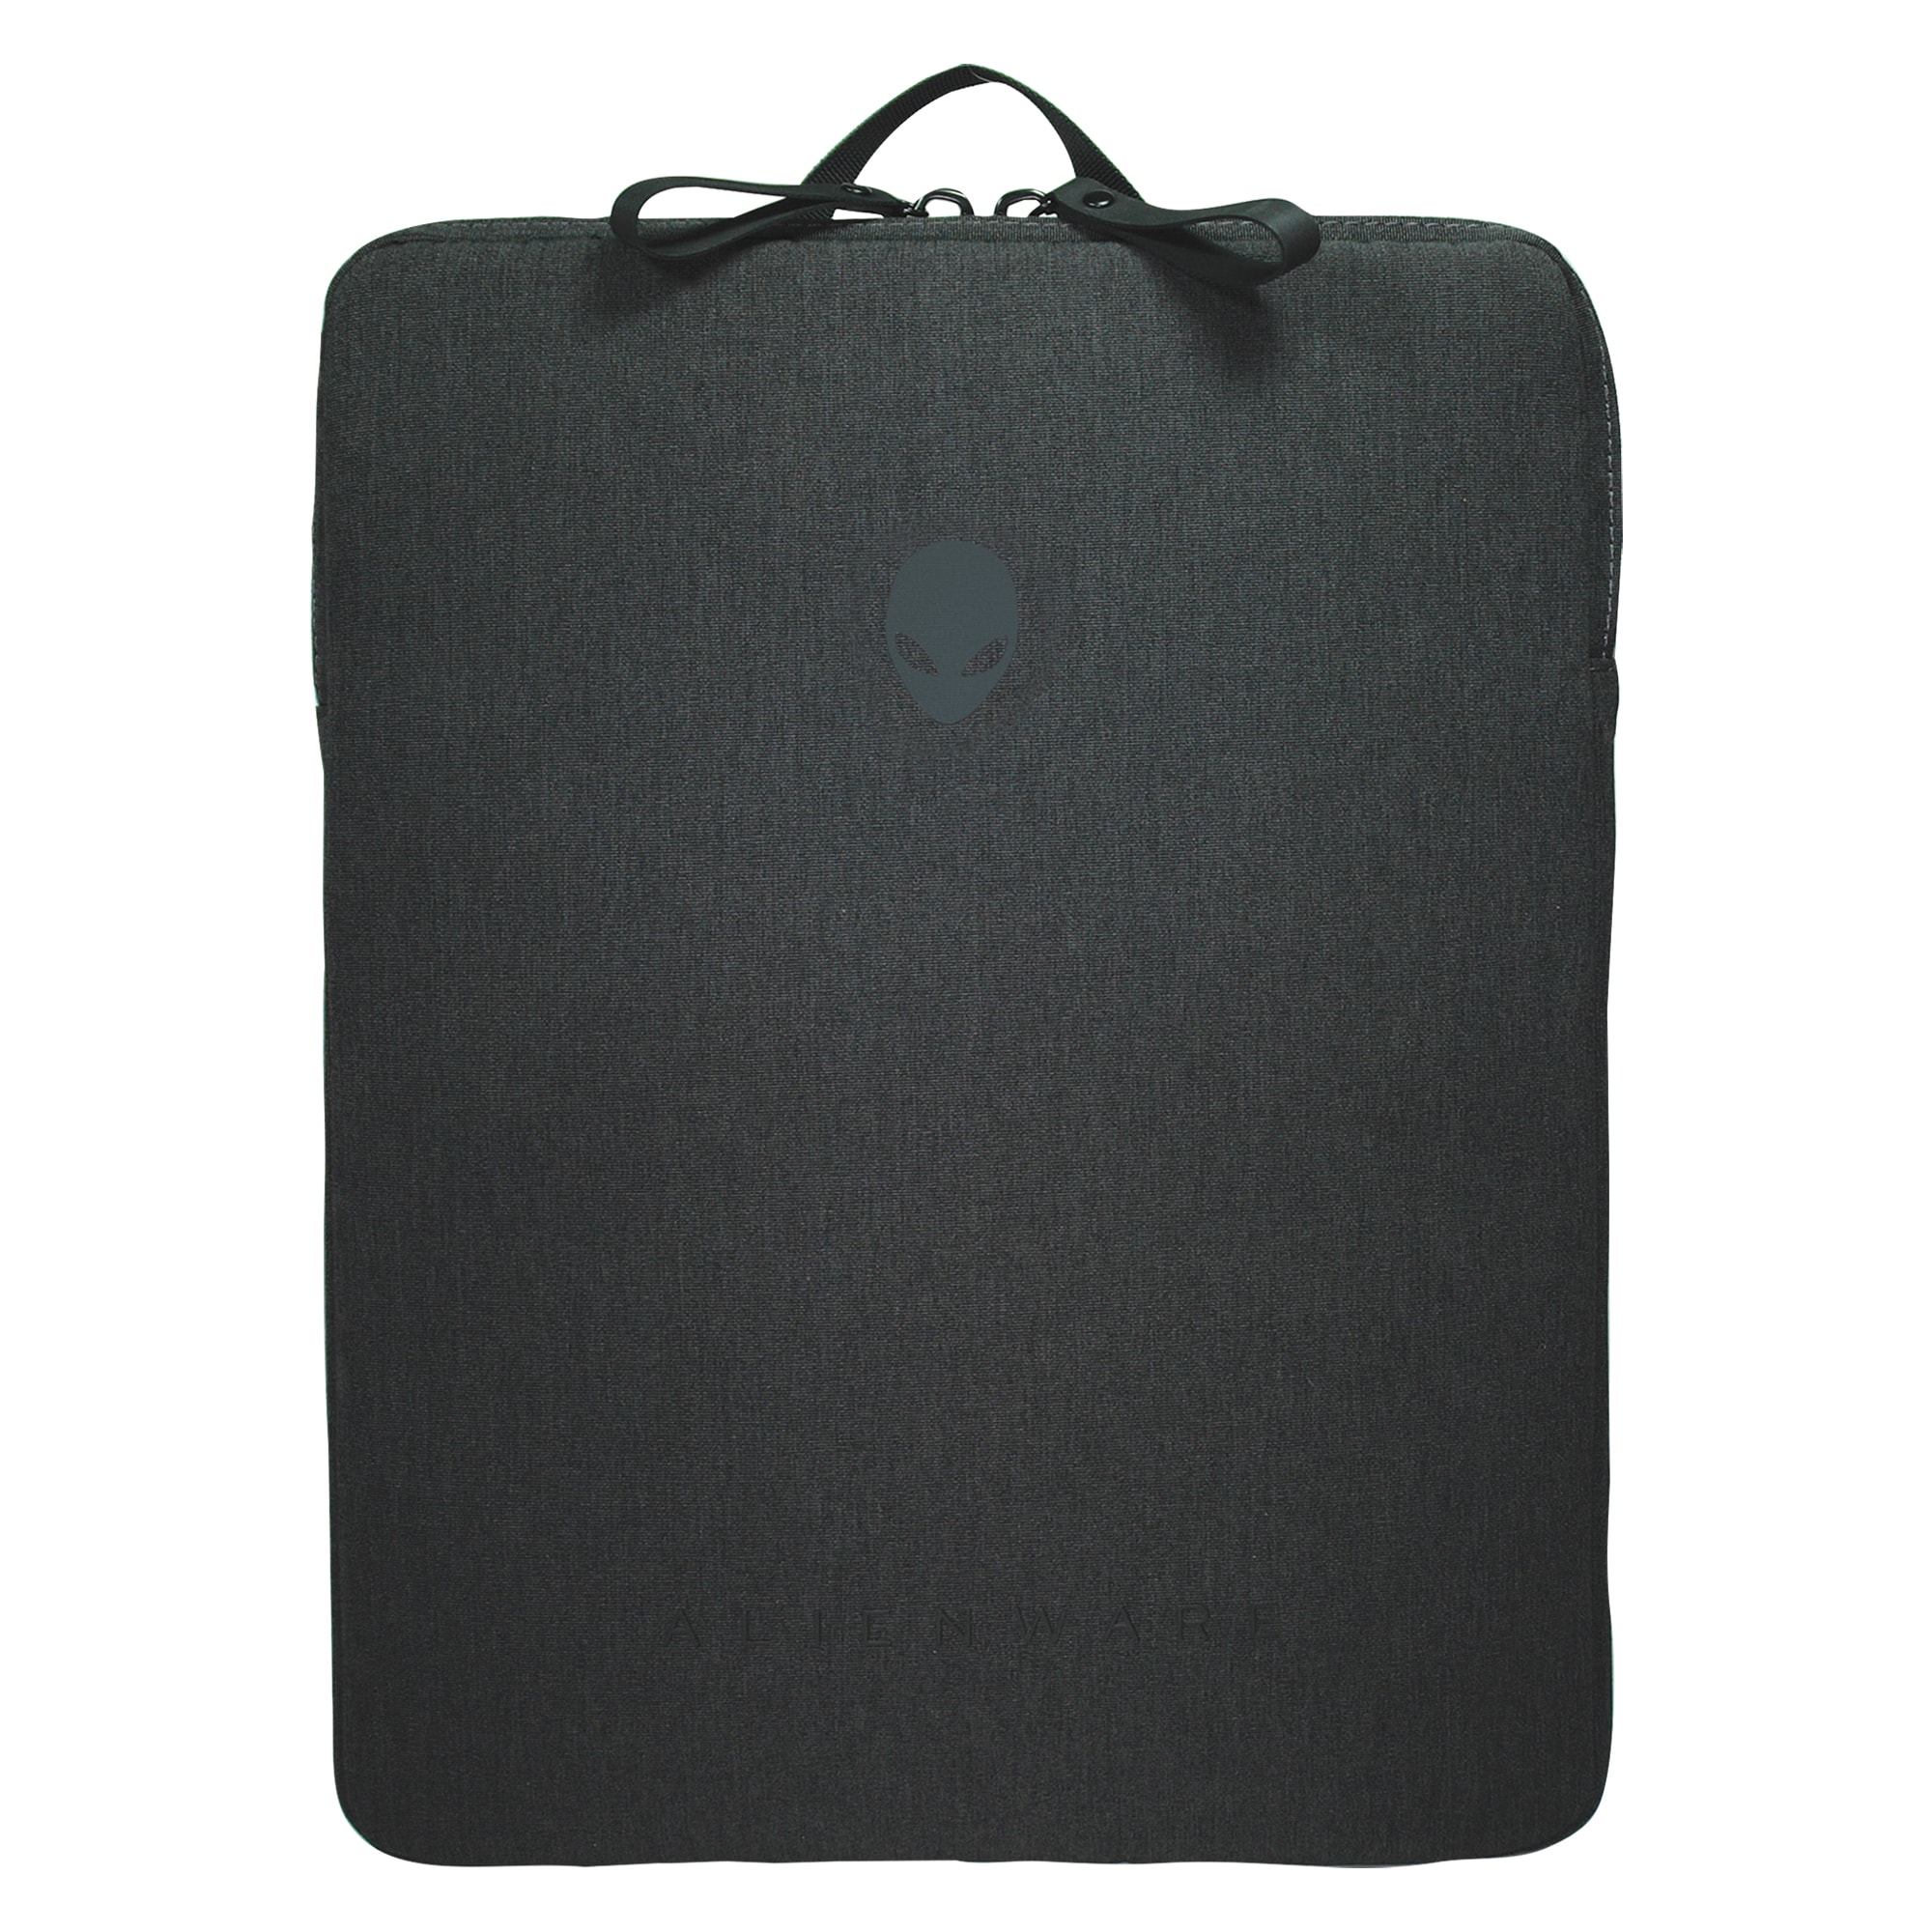 SWISSGEAR Best Selling Laptop Backpacks